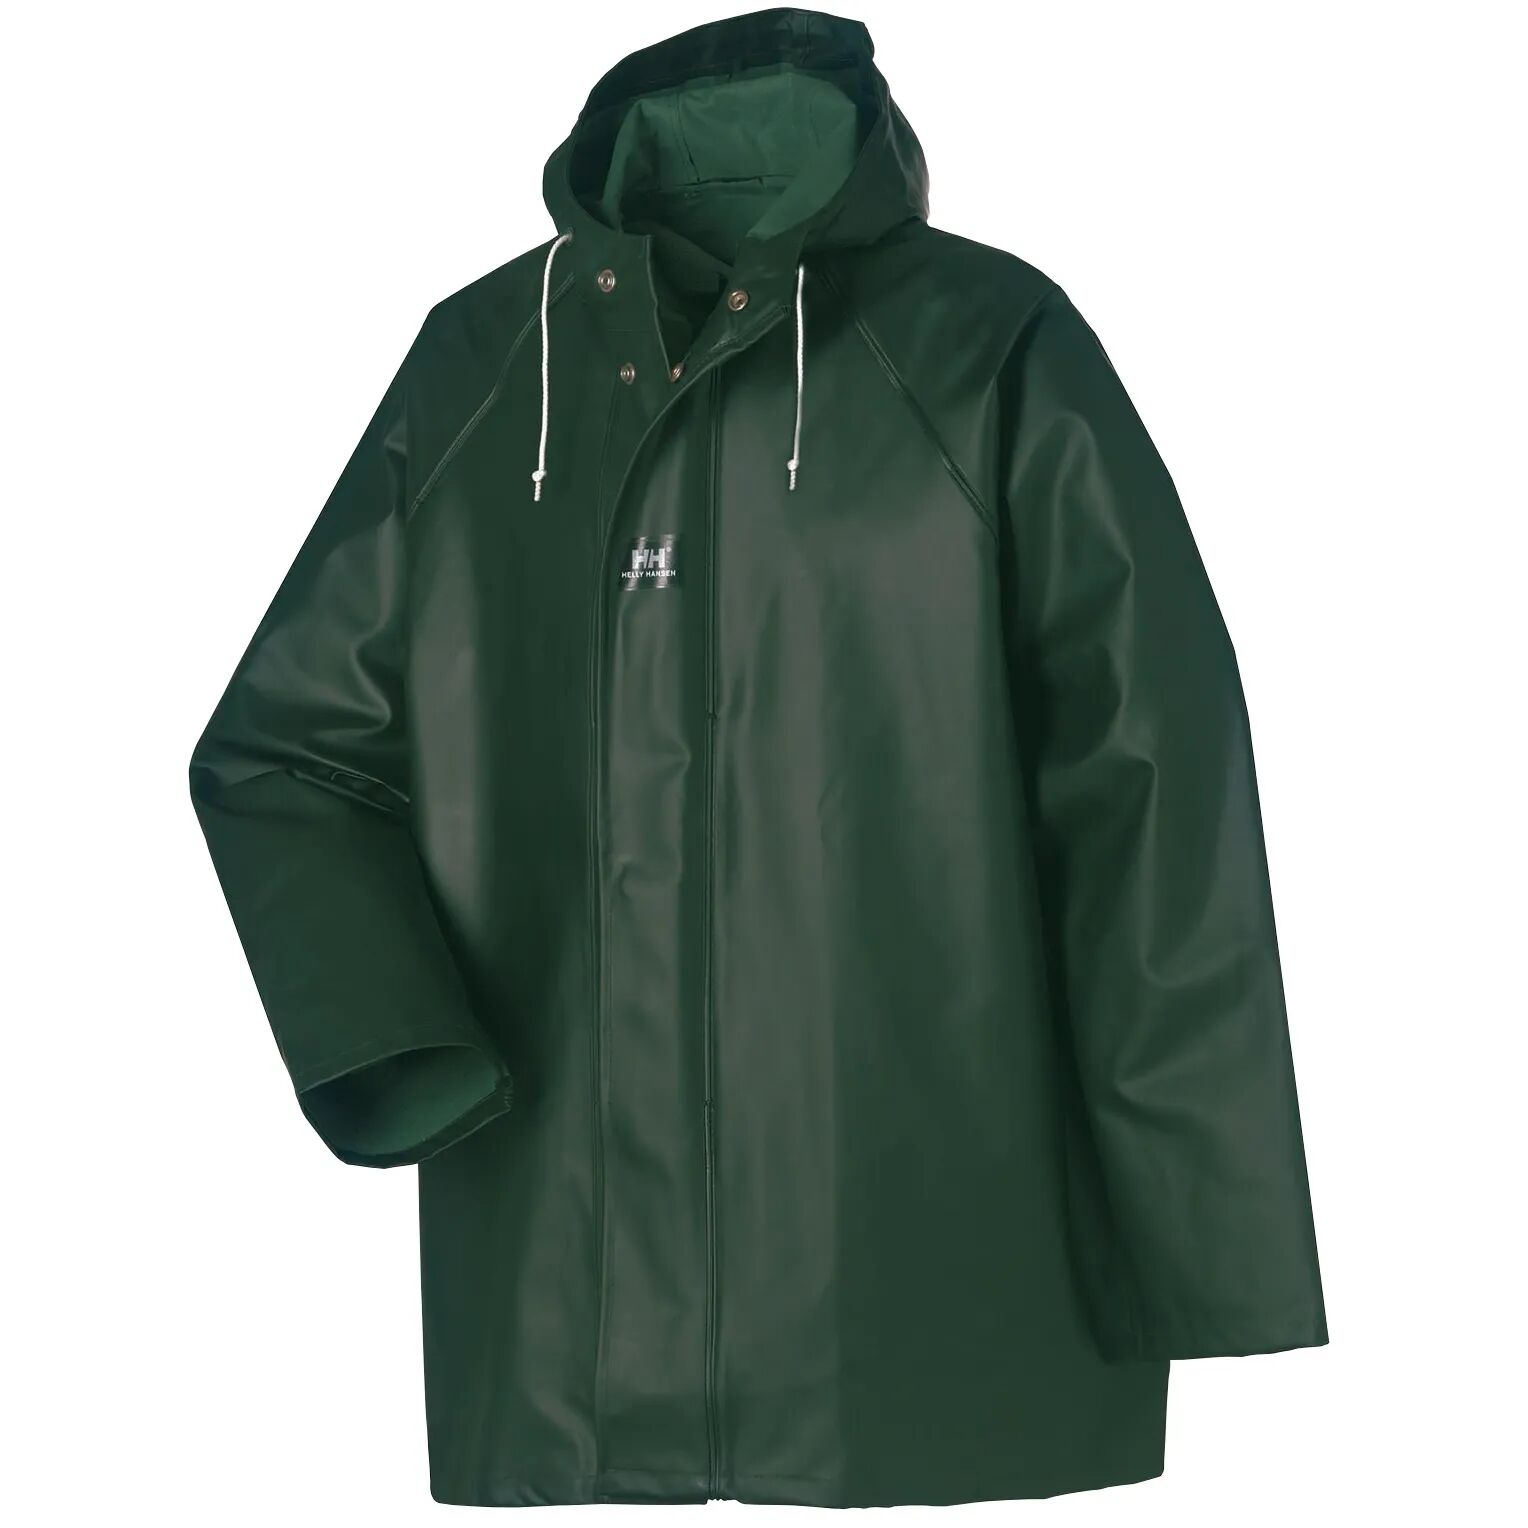 HH Workwear Helly Hansen WorkwearHighliner 100% Cotton Waterproof Jacket Green S